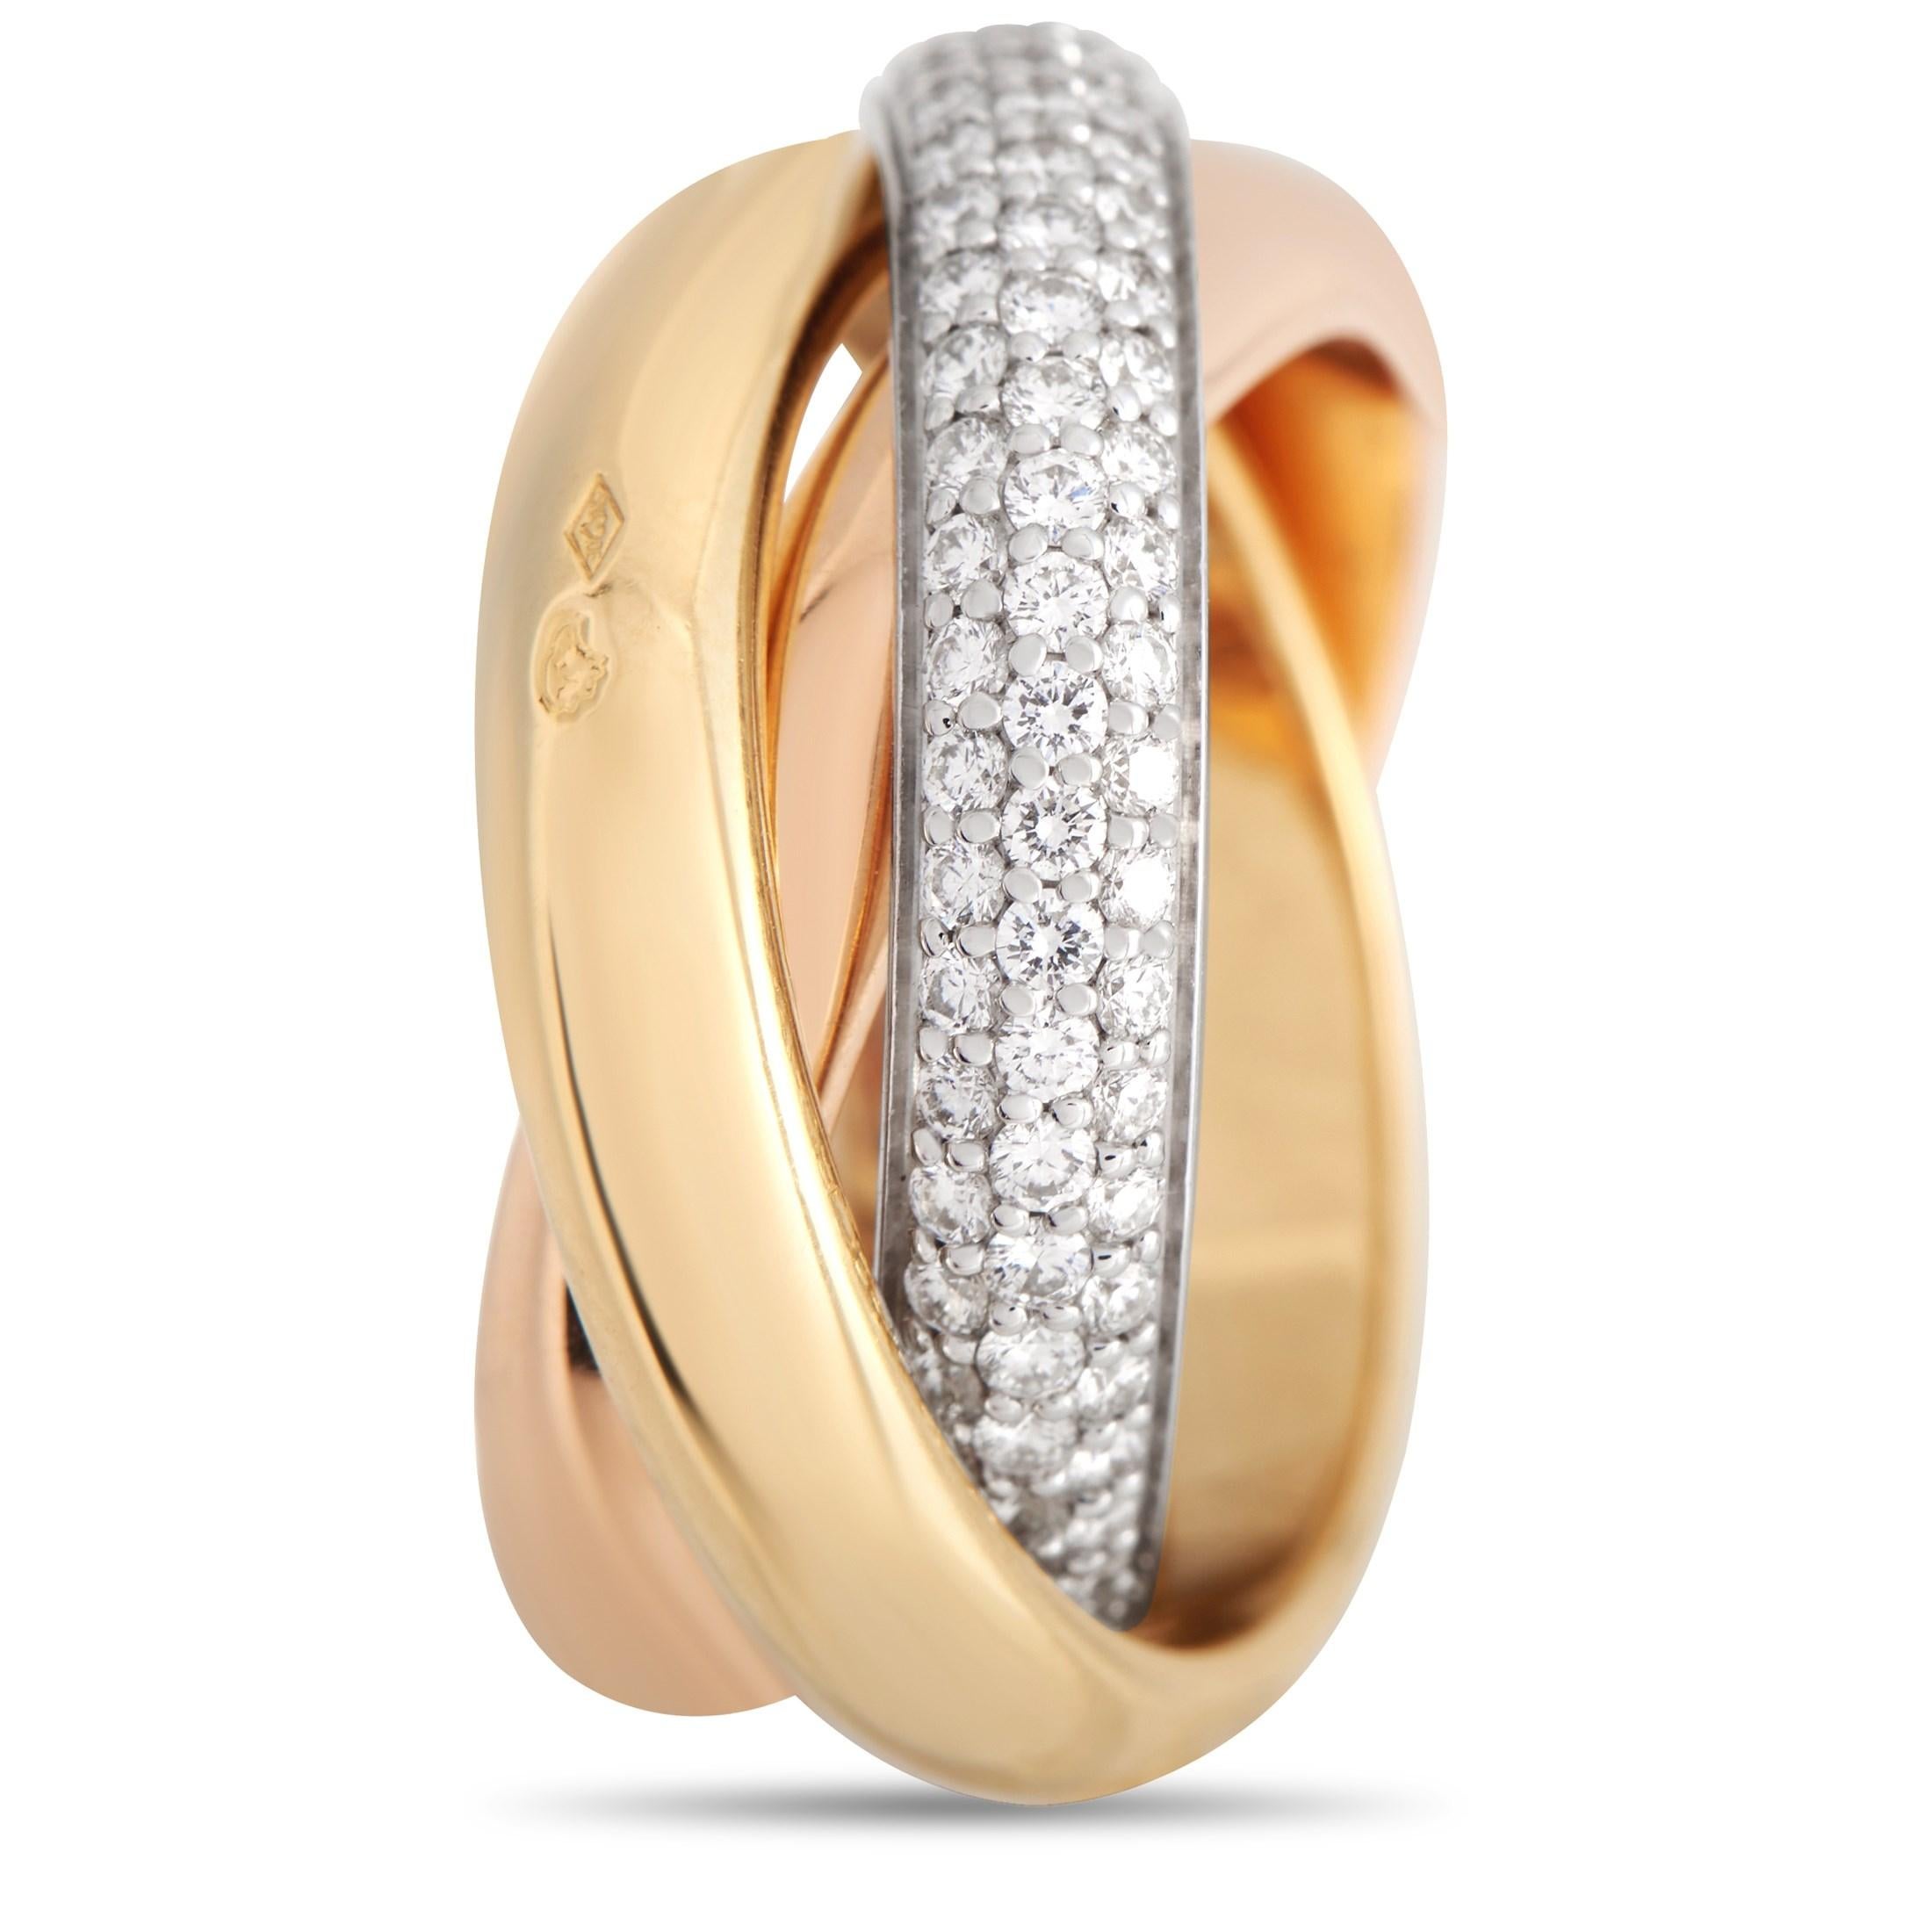 Das dynamische Design macht diesen Cartier Trinity Ring zu einem luxuriösen Schmuckstück, das nie aus der Mode kommen wird. Das Trio aus ineinander verschlungenen Bändern aus 18 Karat Roségold, 18 Karat Gelbgold und 18 Karat Weißgold verleiht diesem